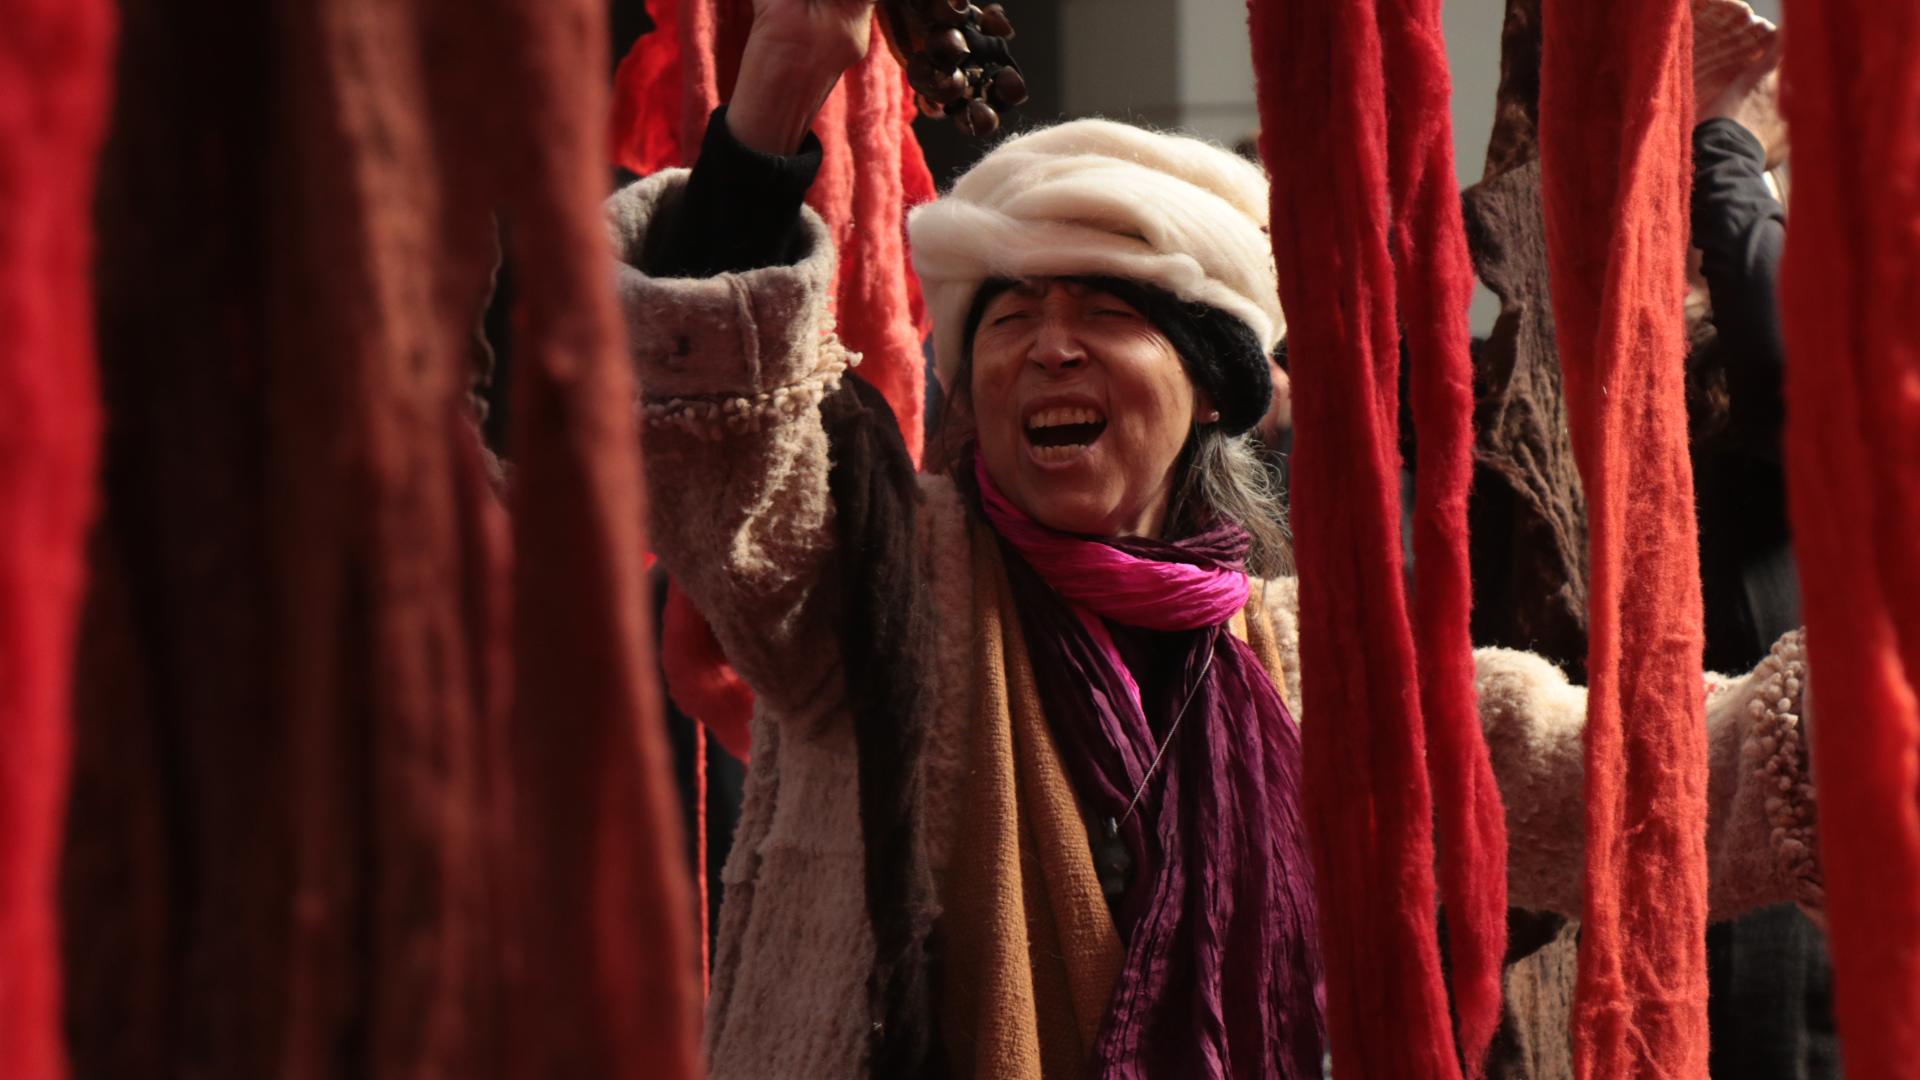 Mujer mayor riendo alrededor de telas de color rojo y naranja